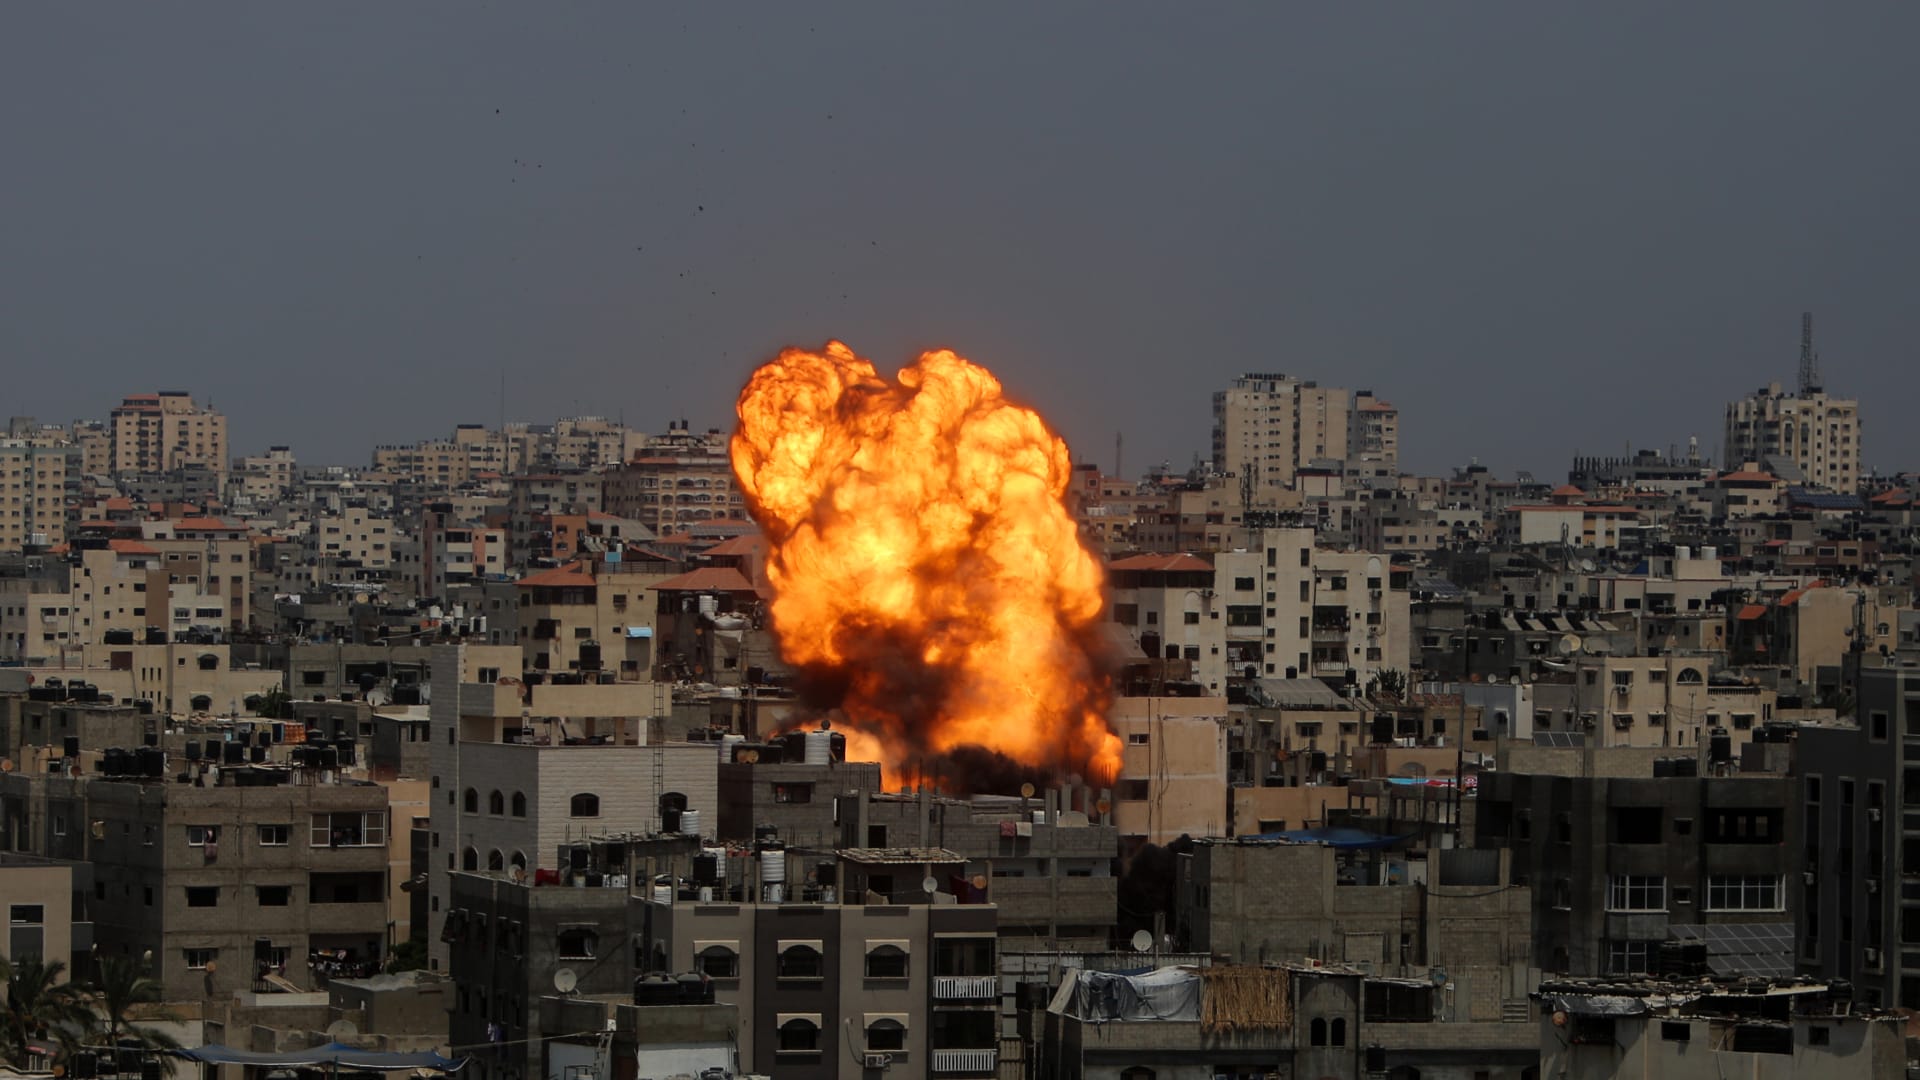 شاهد لحظة اعتراض القبة الحديدية لوابل صواريخ من غزة أطلقت نحو مناطق عدة في إسرائيل